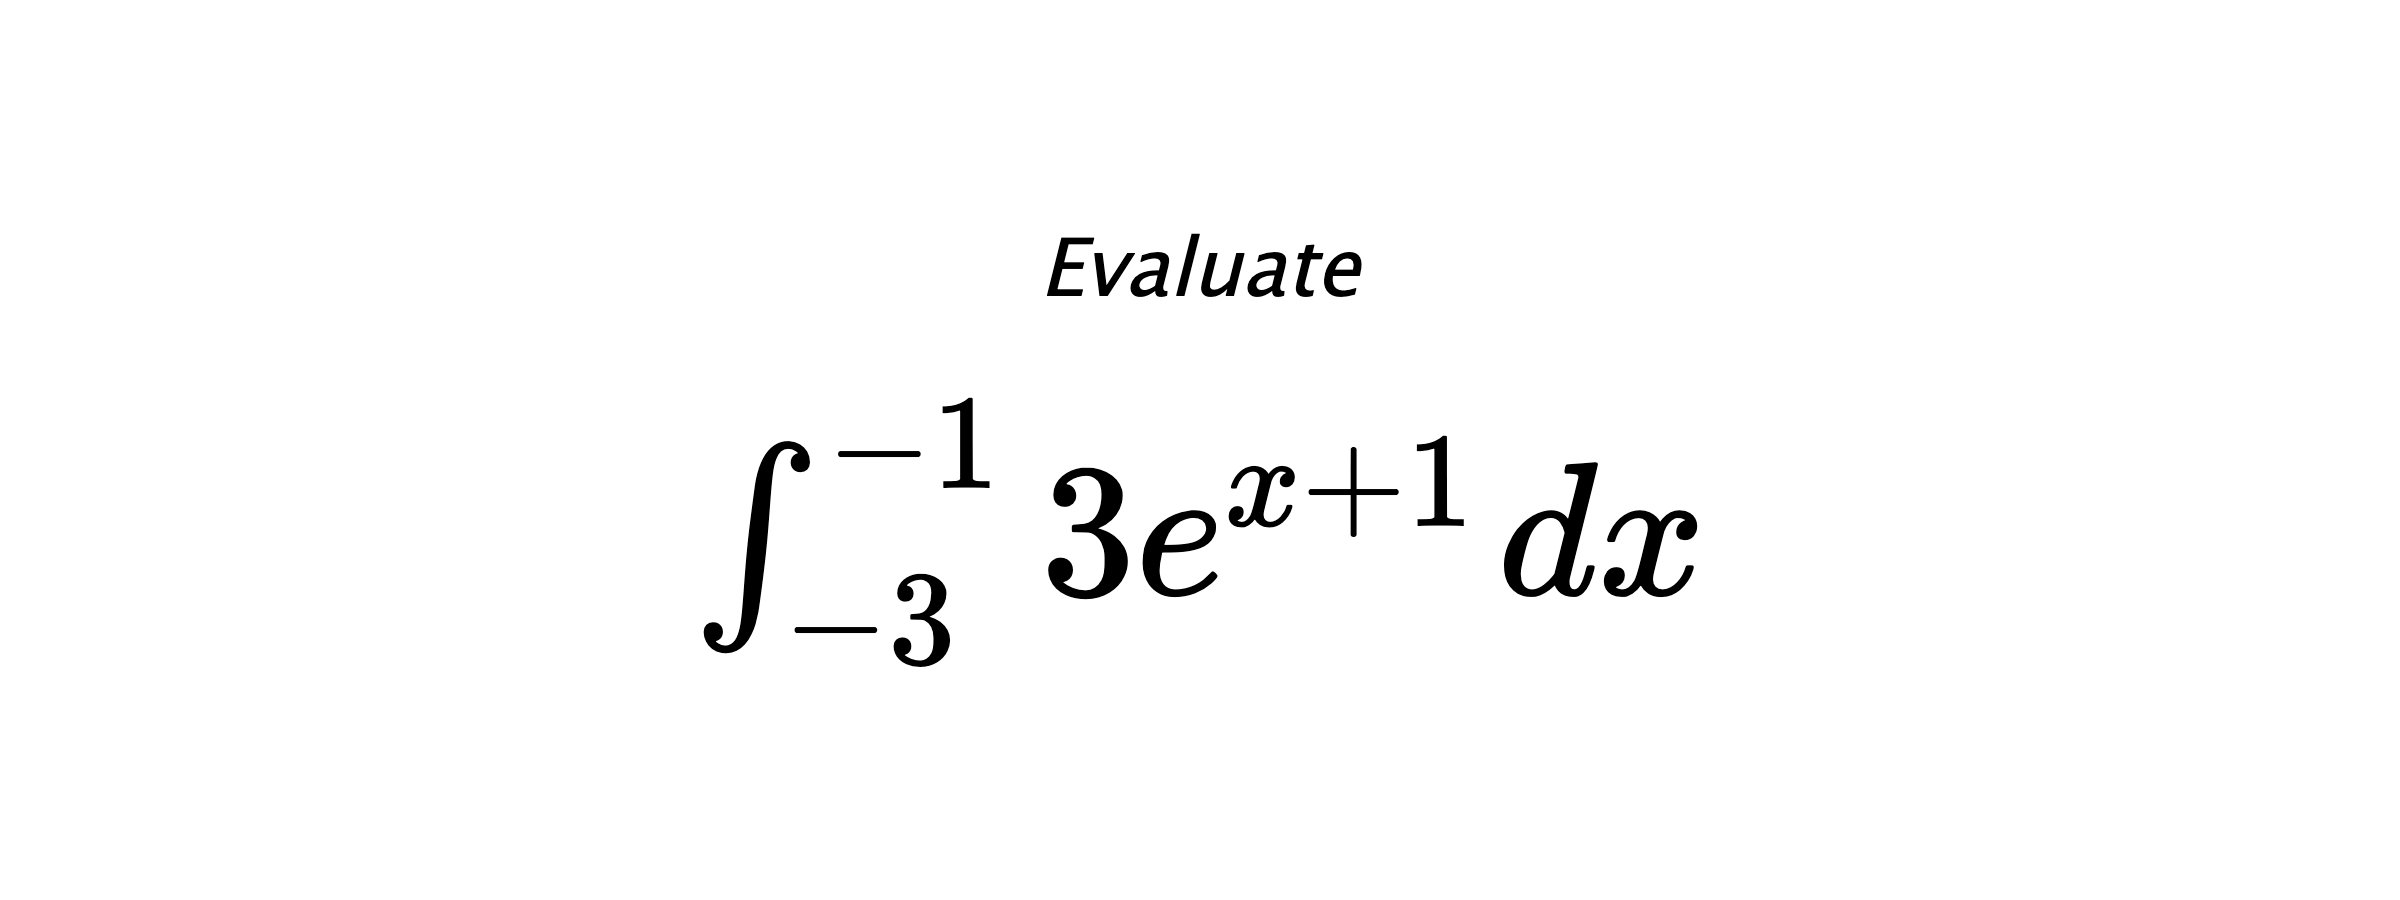 Evaluate $ \int_{-3}^{-1} 3e^{x+1} \hspace{0.2cm} dx $